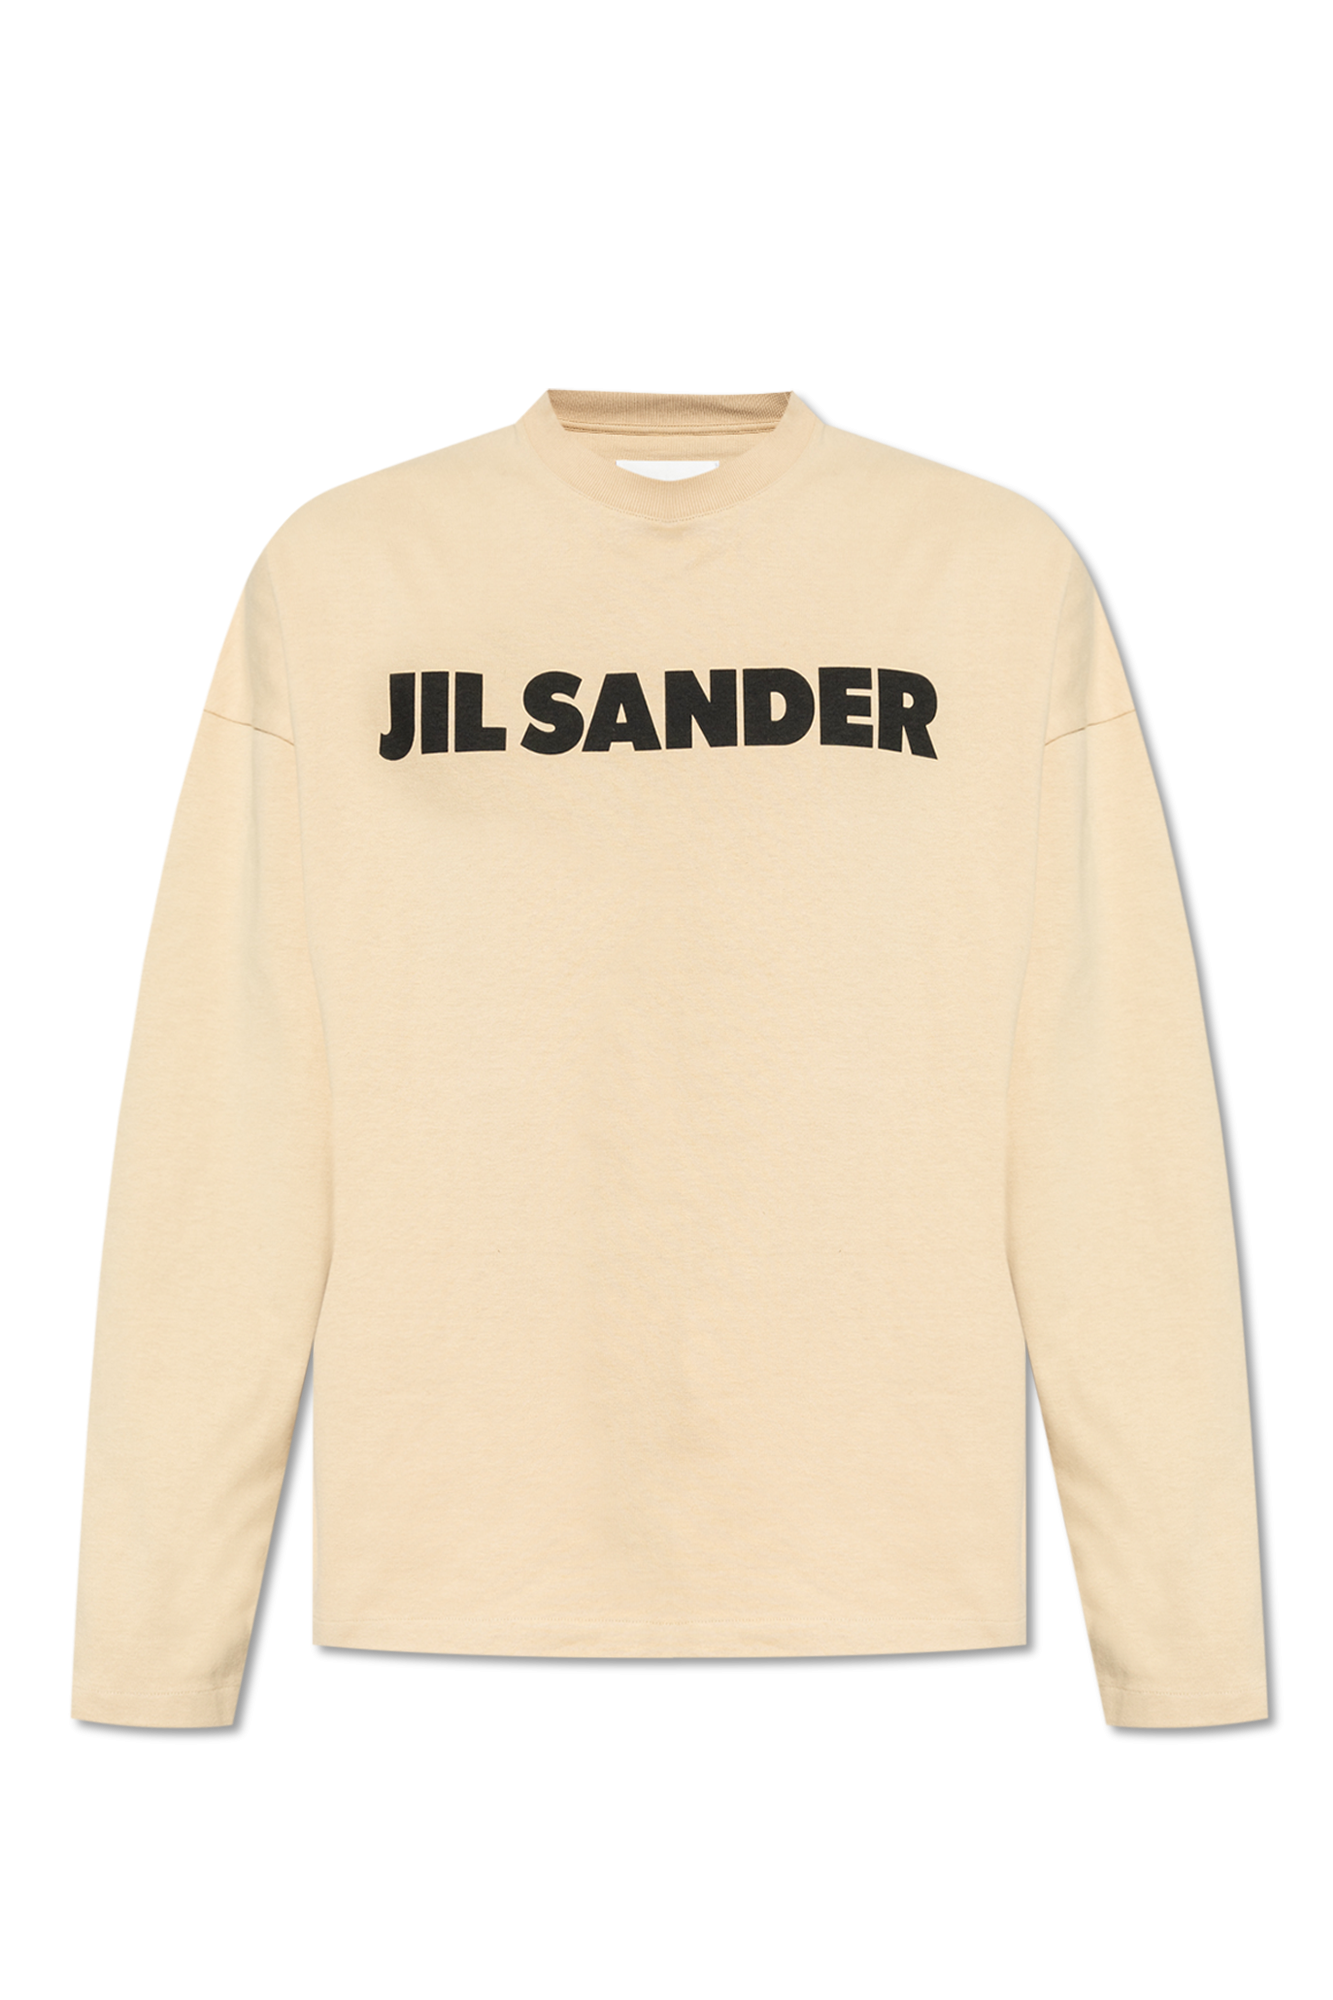 JIL SANDER jil sander ankle bracelet square toe loafers item